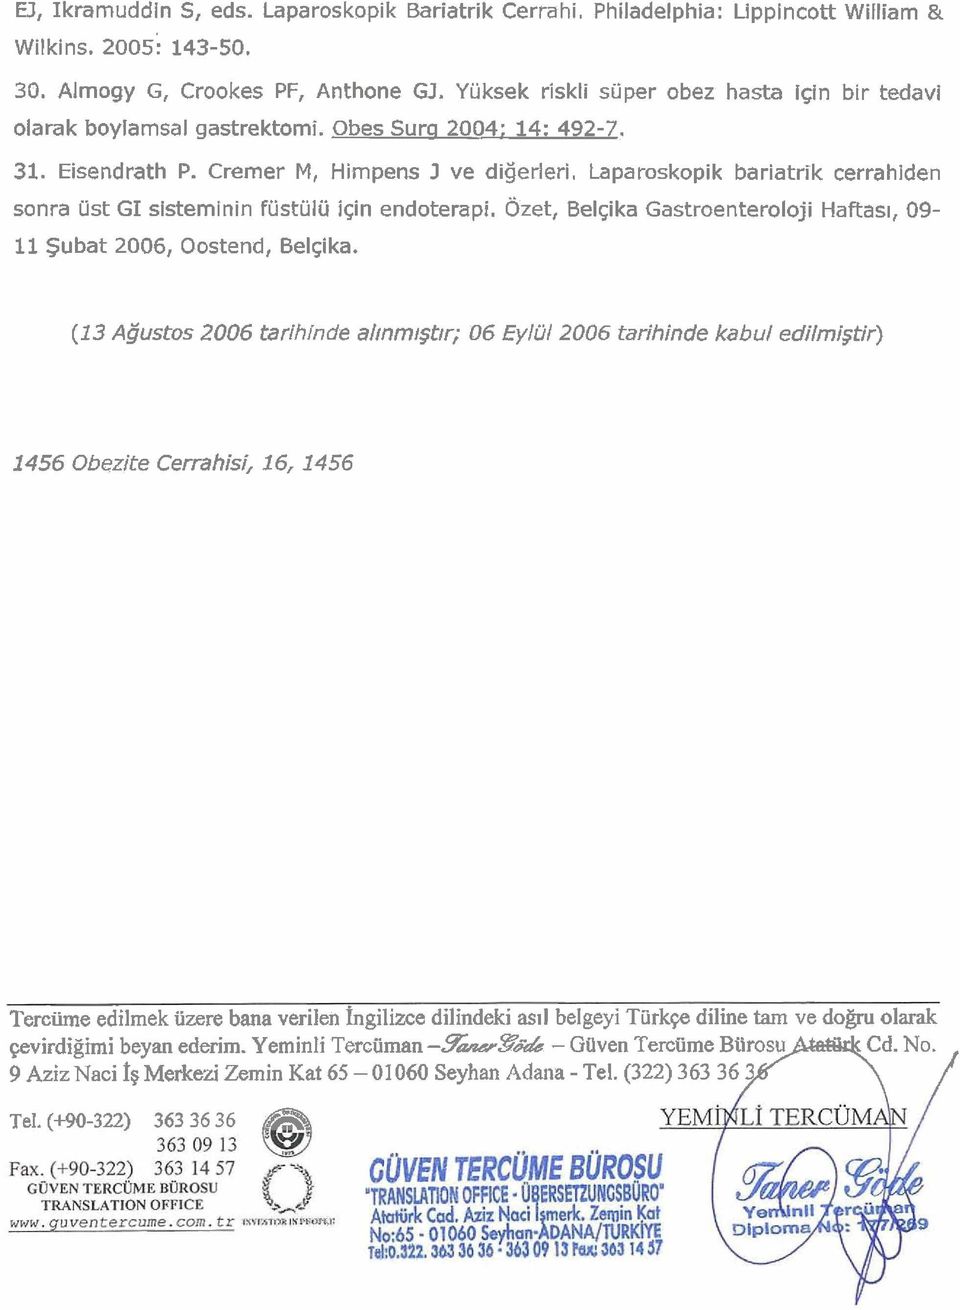 Laparoskopik bariatrik cerrahiden sonra ust GI sisteminin fustulu igin endoterapi, Ozet, Belgika Gastroenteroloji Haftas~, 09-11 Subat 2006, Oostend, Belgika.